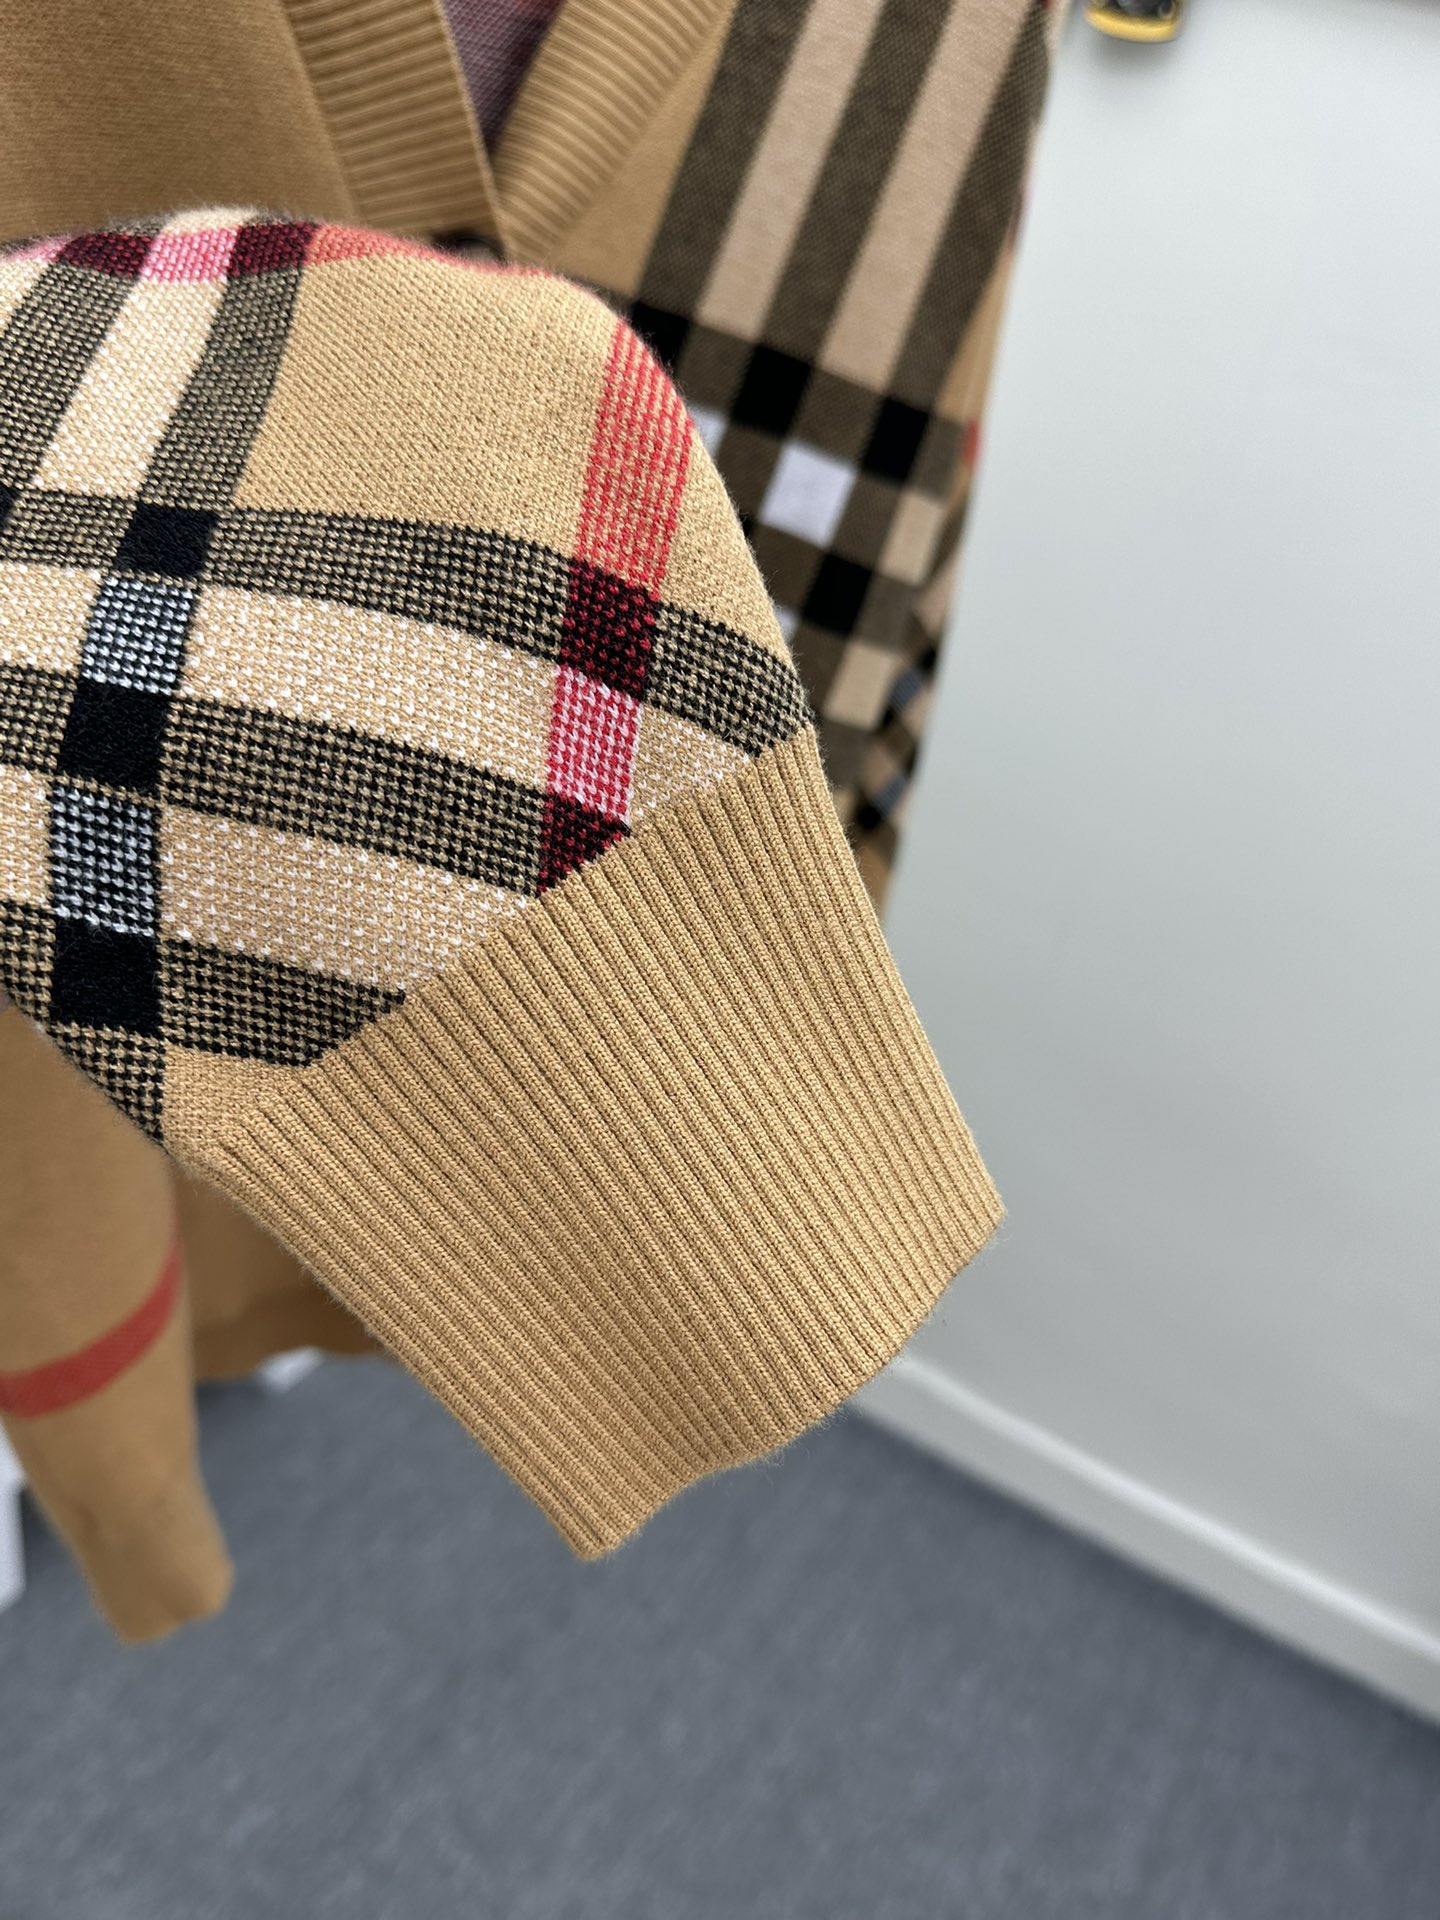 巴宝莉秋冬新款针织开衫毛衣高端品质专柜版本潮人最爱风格系列撞色拼接设计LOGO图案标志精选优质羊毛混纺针